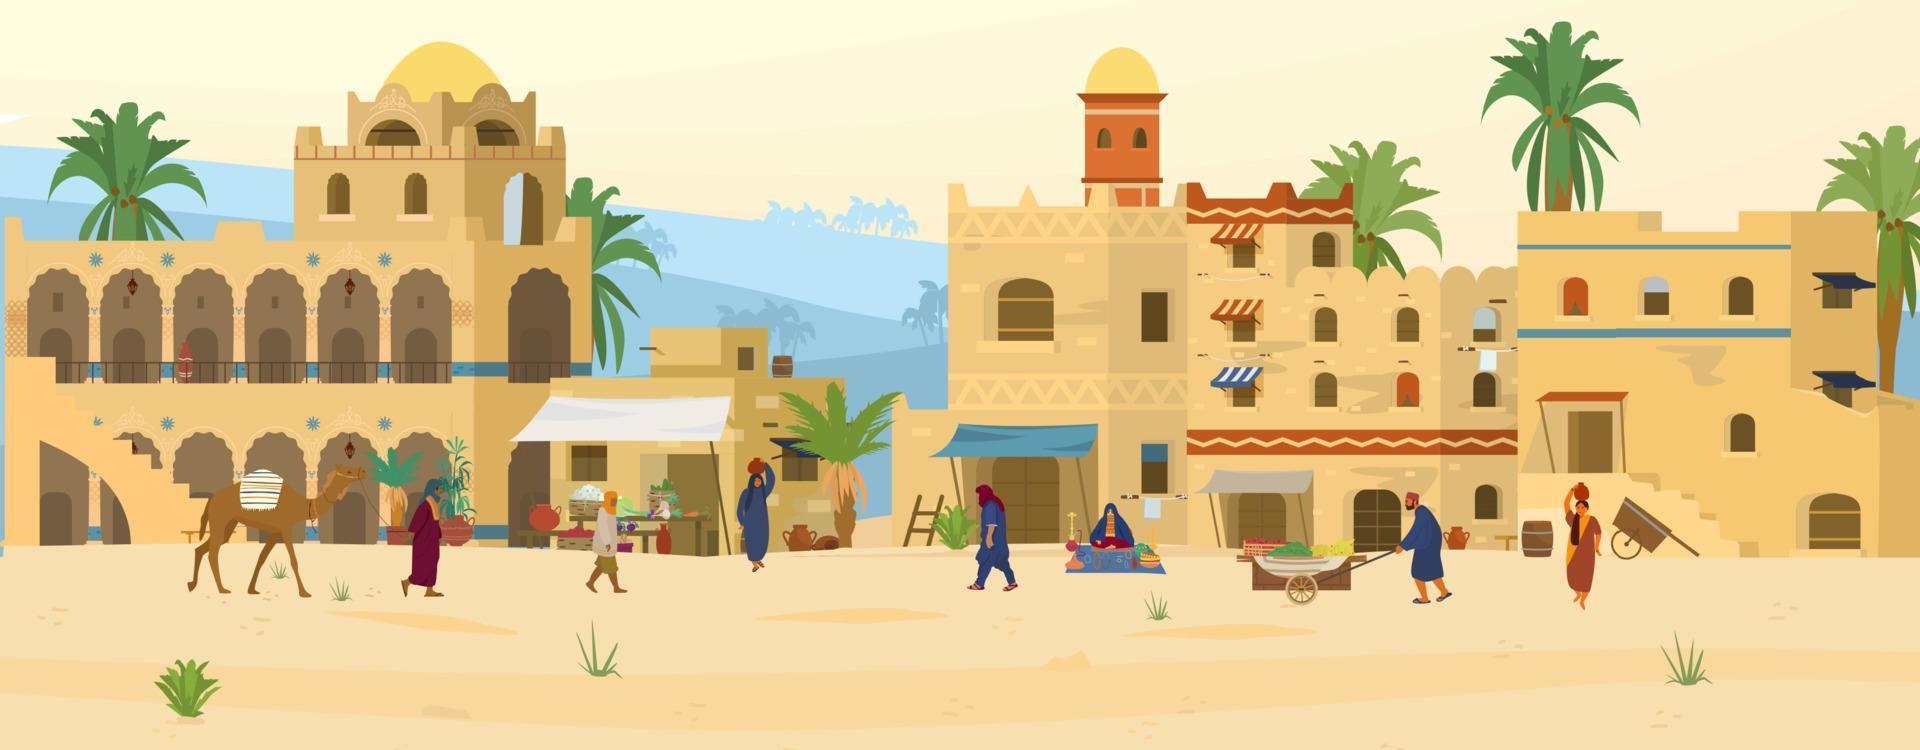 vektor illustration av mitten östra scen. gammal arabicum stad i öken- med traditionell lera tegel hus och människor. asiatisk basar.